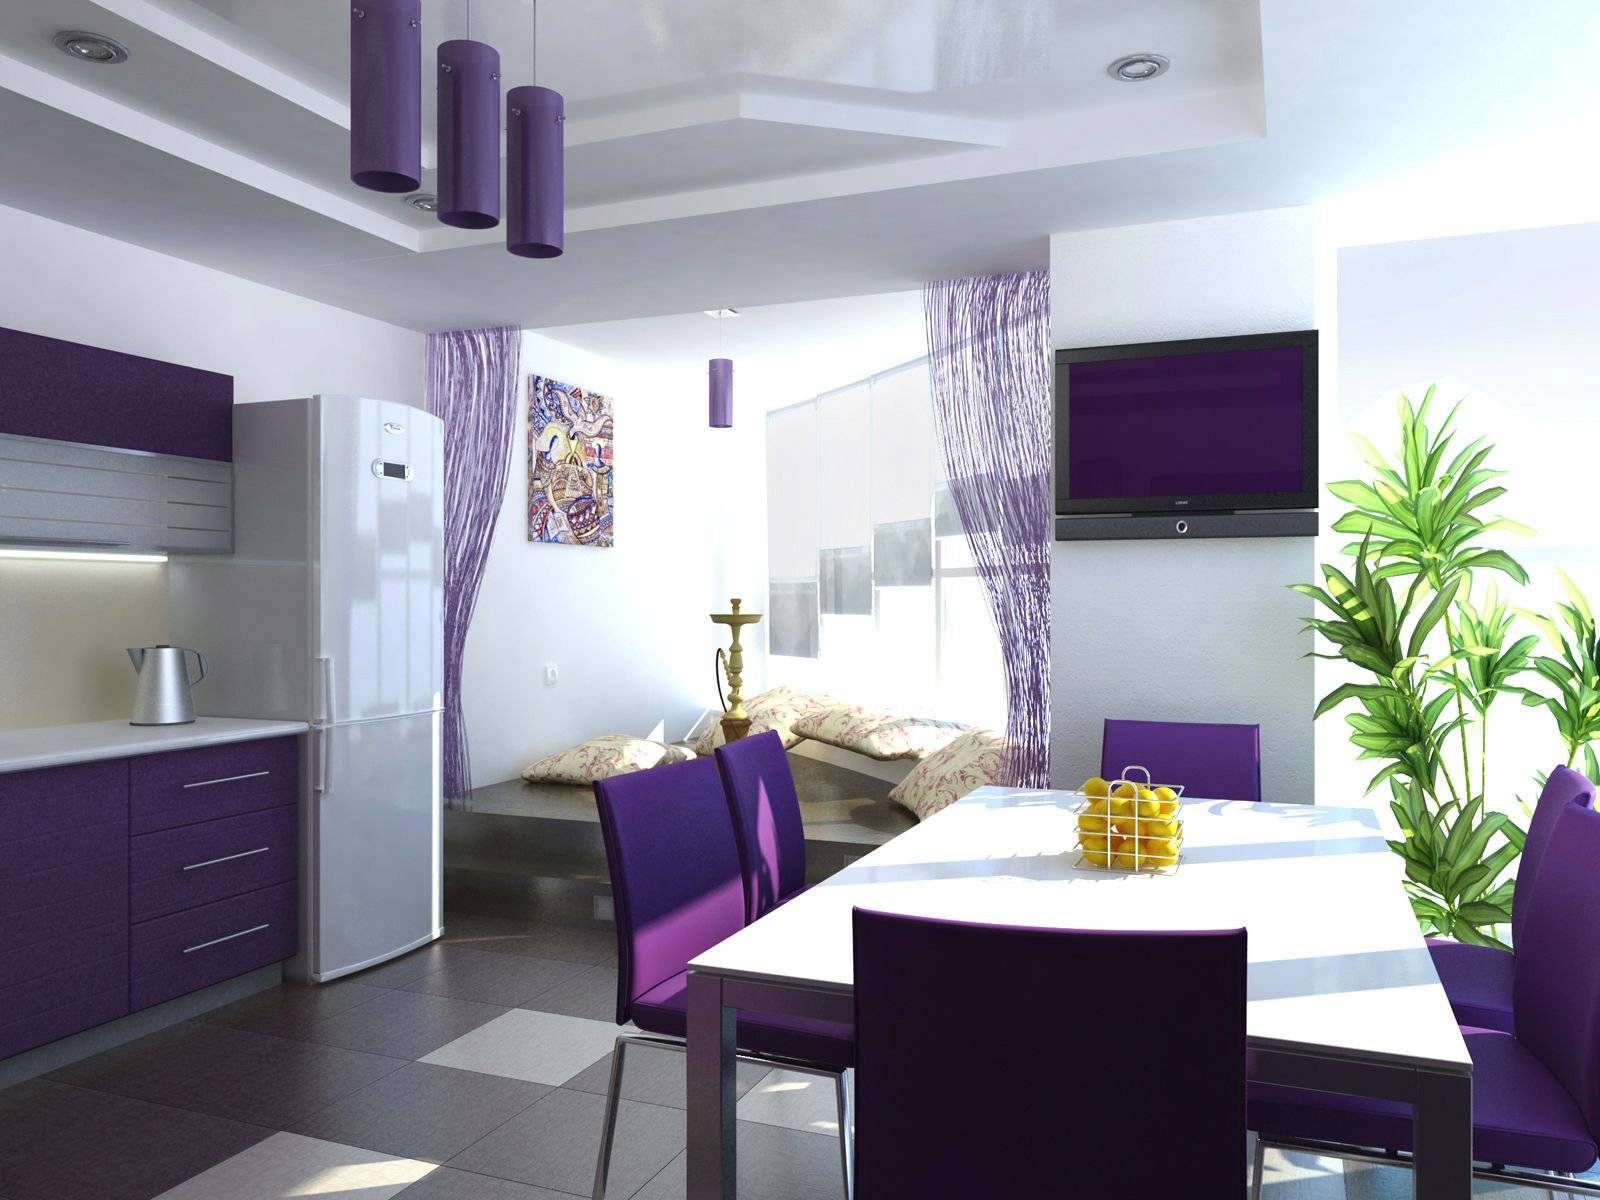 Фиолетовая кухня: гарнитур, шторы, столешница и рабочий фартук